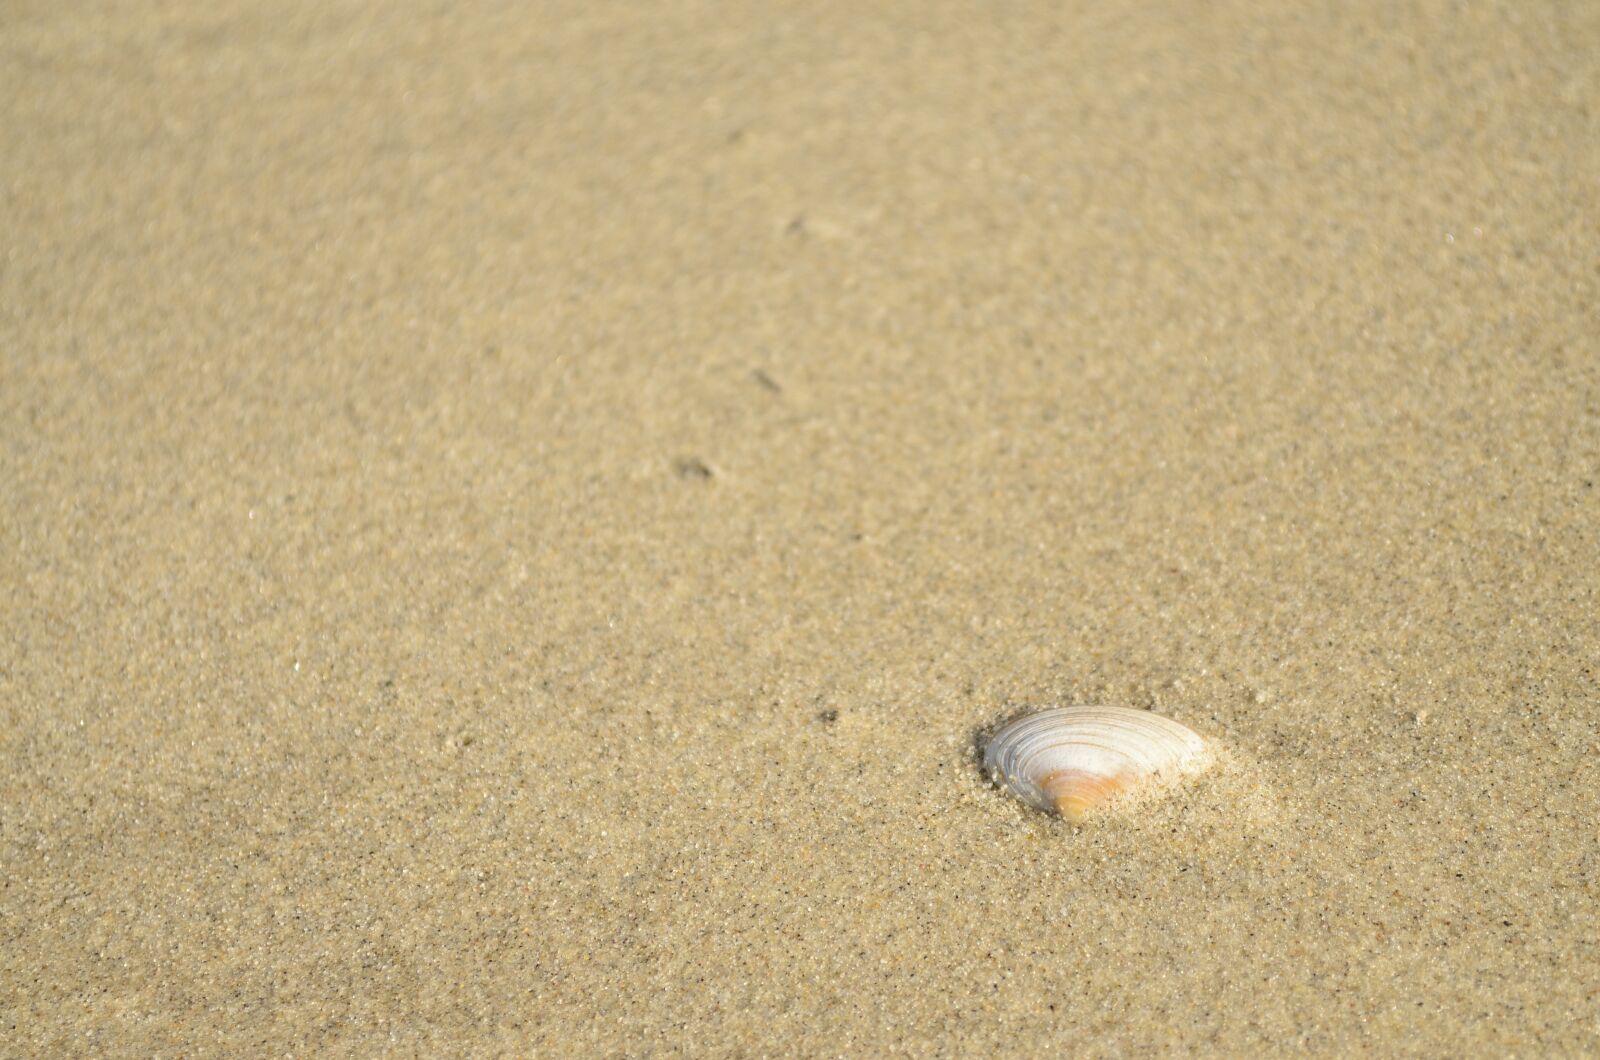 Nikon D5100 sample photo. Beach, sand, shell photography